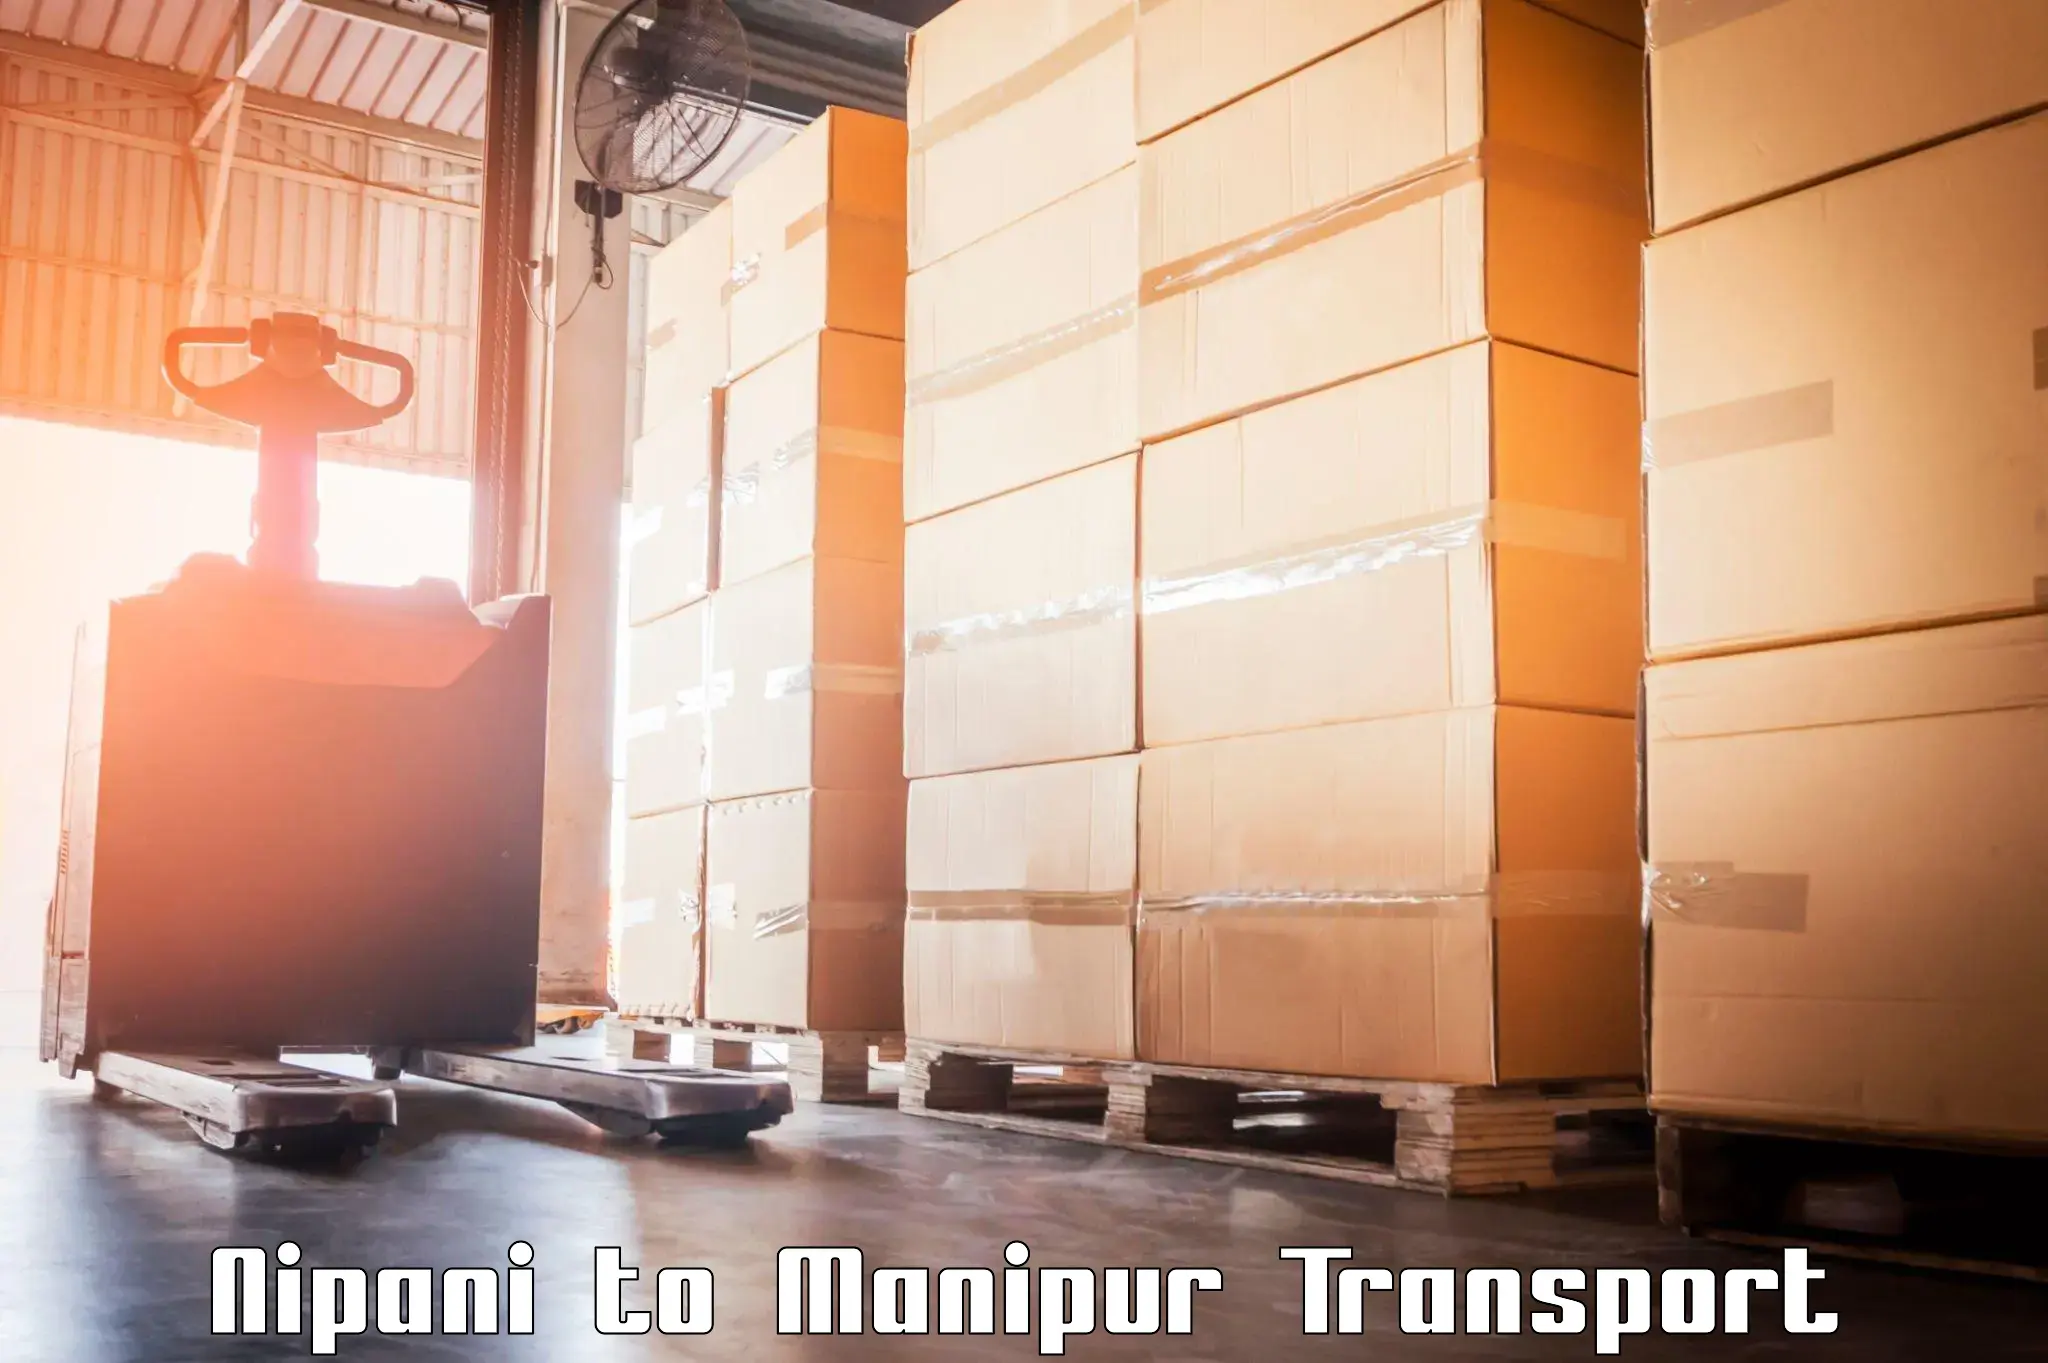 Cargo train transport services Nipani to Senapati